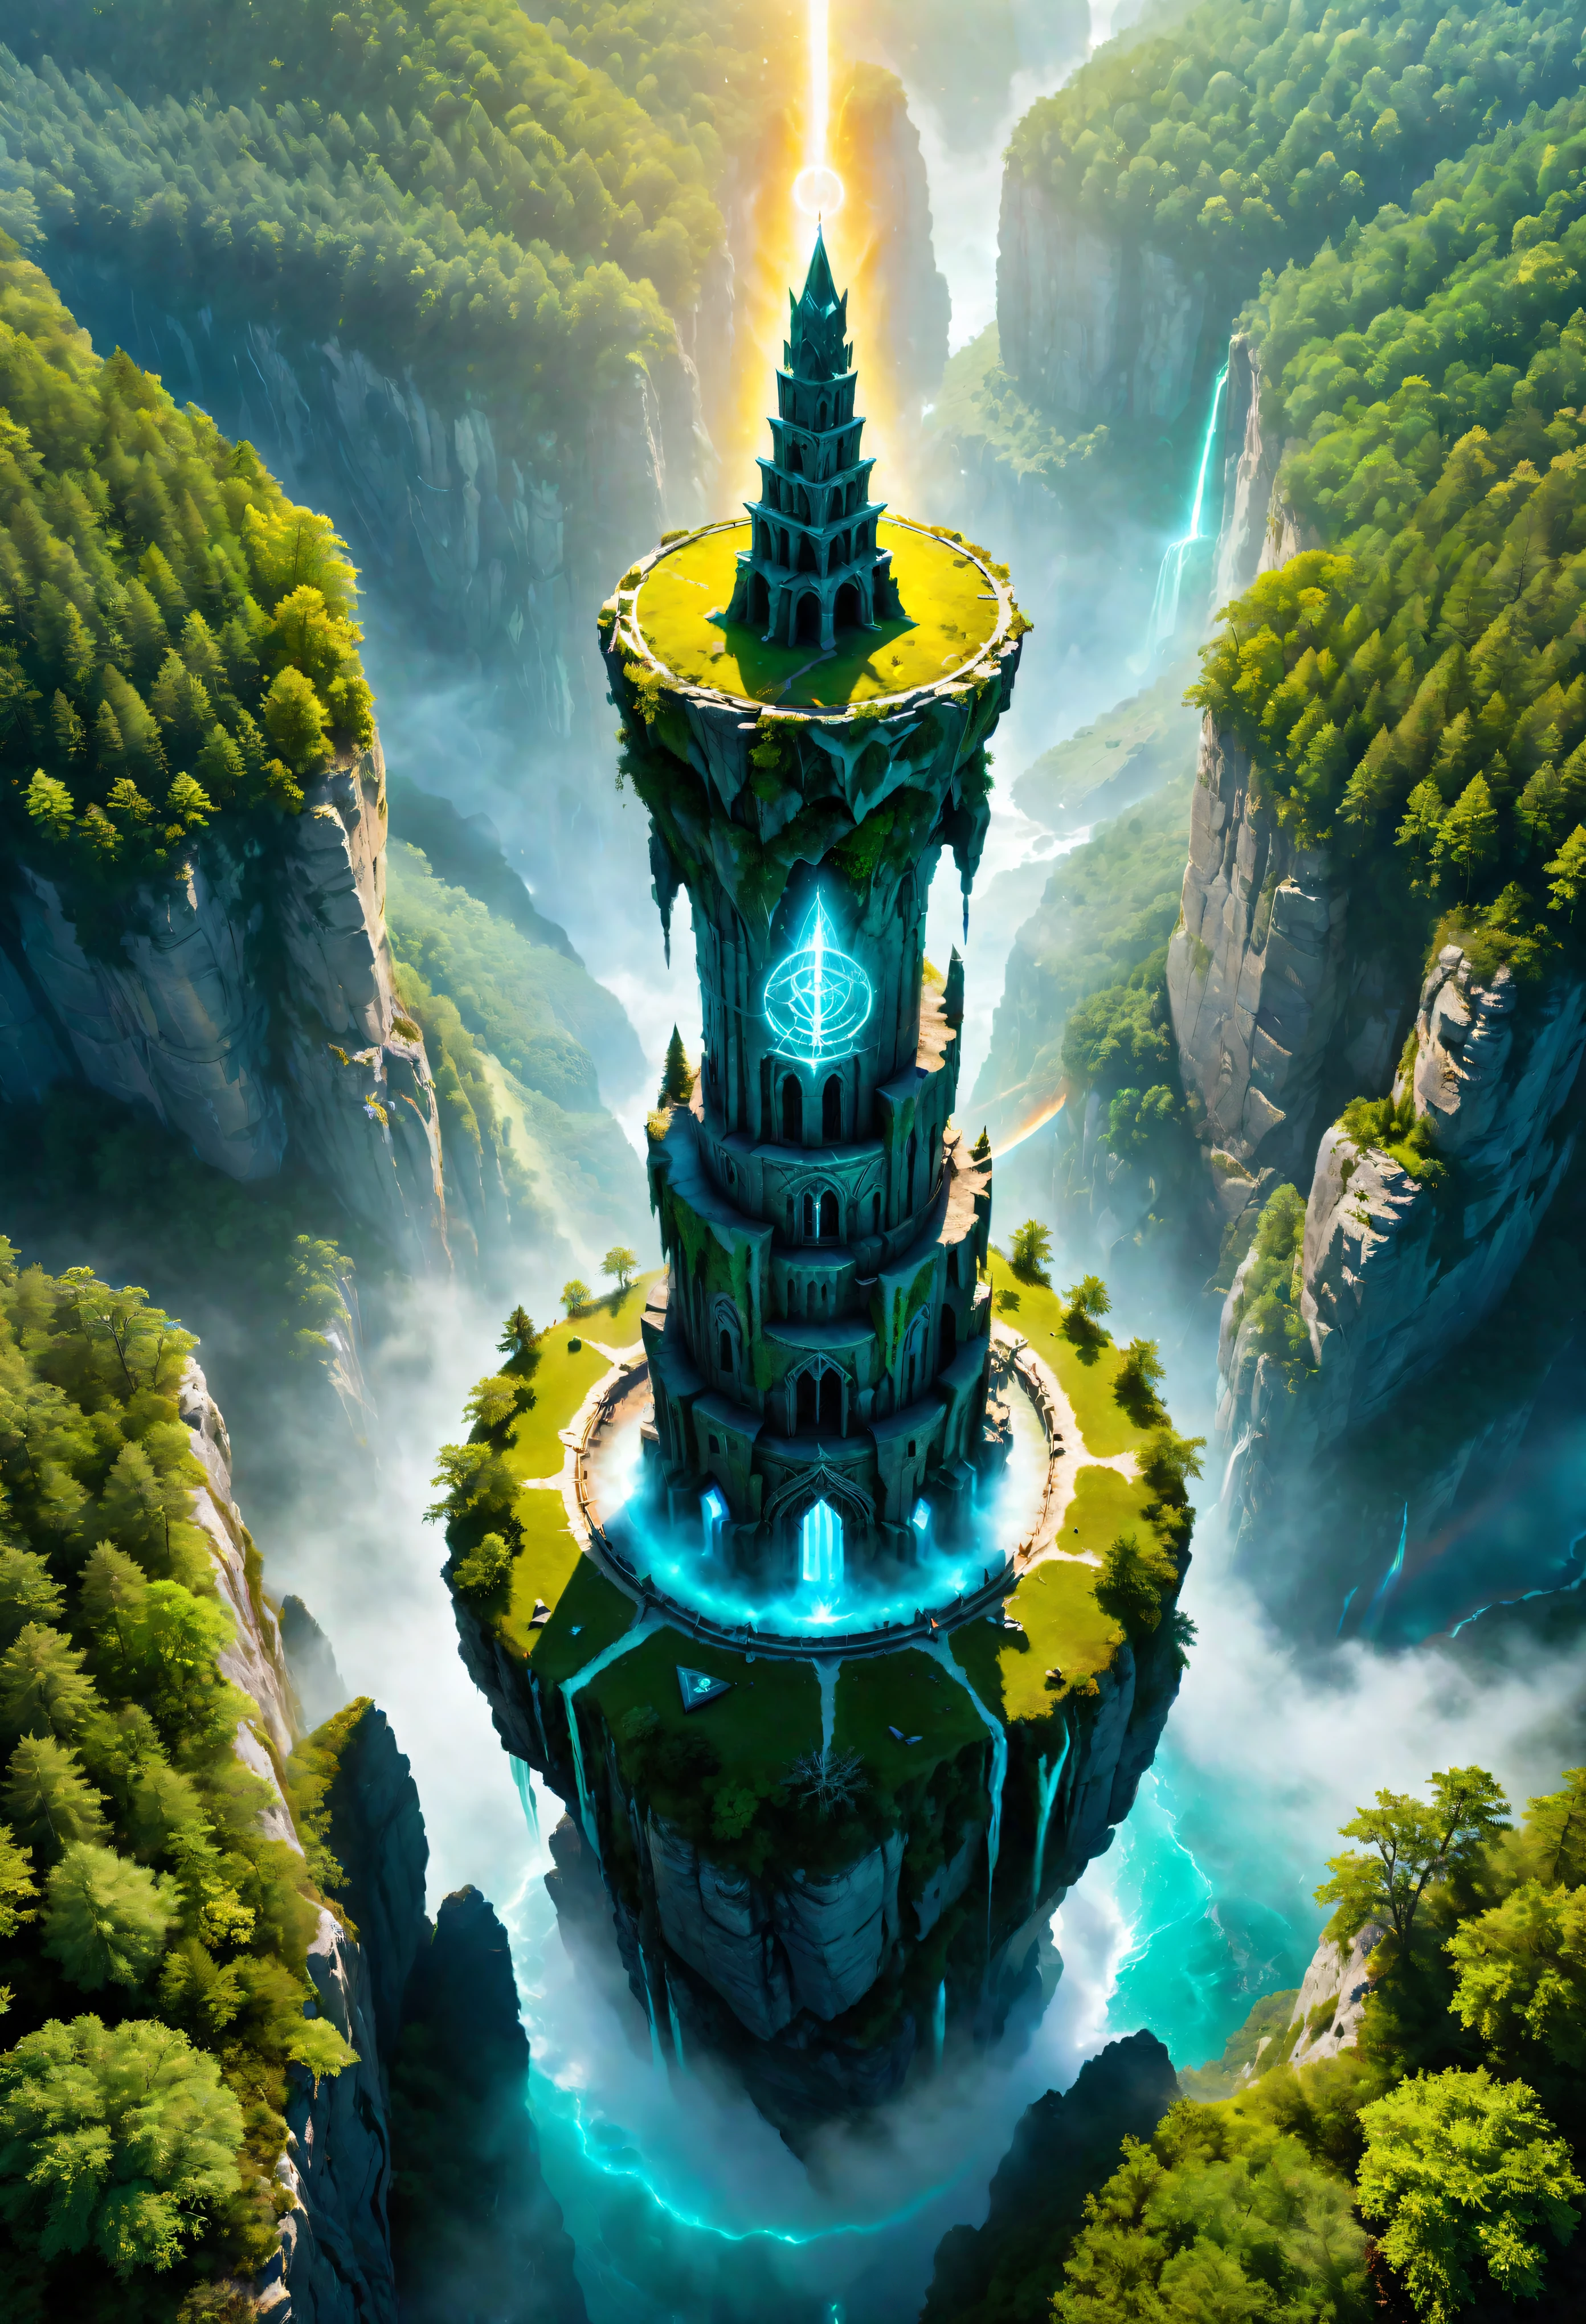 조감도 of Towering steep and towering high 마법의 탑 in a cliff, 야생의 숲, 마법의 안개, 비대칭 마법진 절벽 협곡, ((조감도):1.2), (빛나는 룬), (빛나는 인장), 자연환경과의 공존, 마법진 탑, lush colorful 야생의 숲, 아름다운 풍경, 마법의 탑, 매우 상세한, 최고의 품질, 걸작, 높은 해상도, 초현실적, 8K, 평면도, 높은 각도보기, 블루컬러 팔레트, 미니멀리즘.